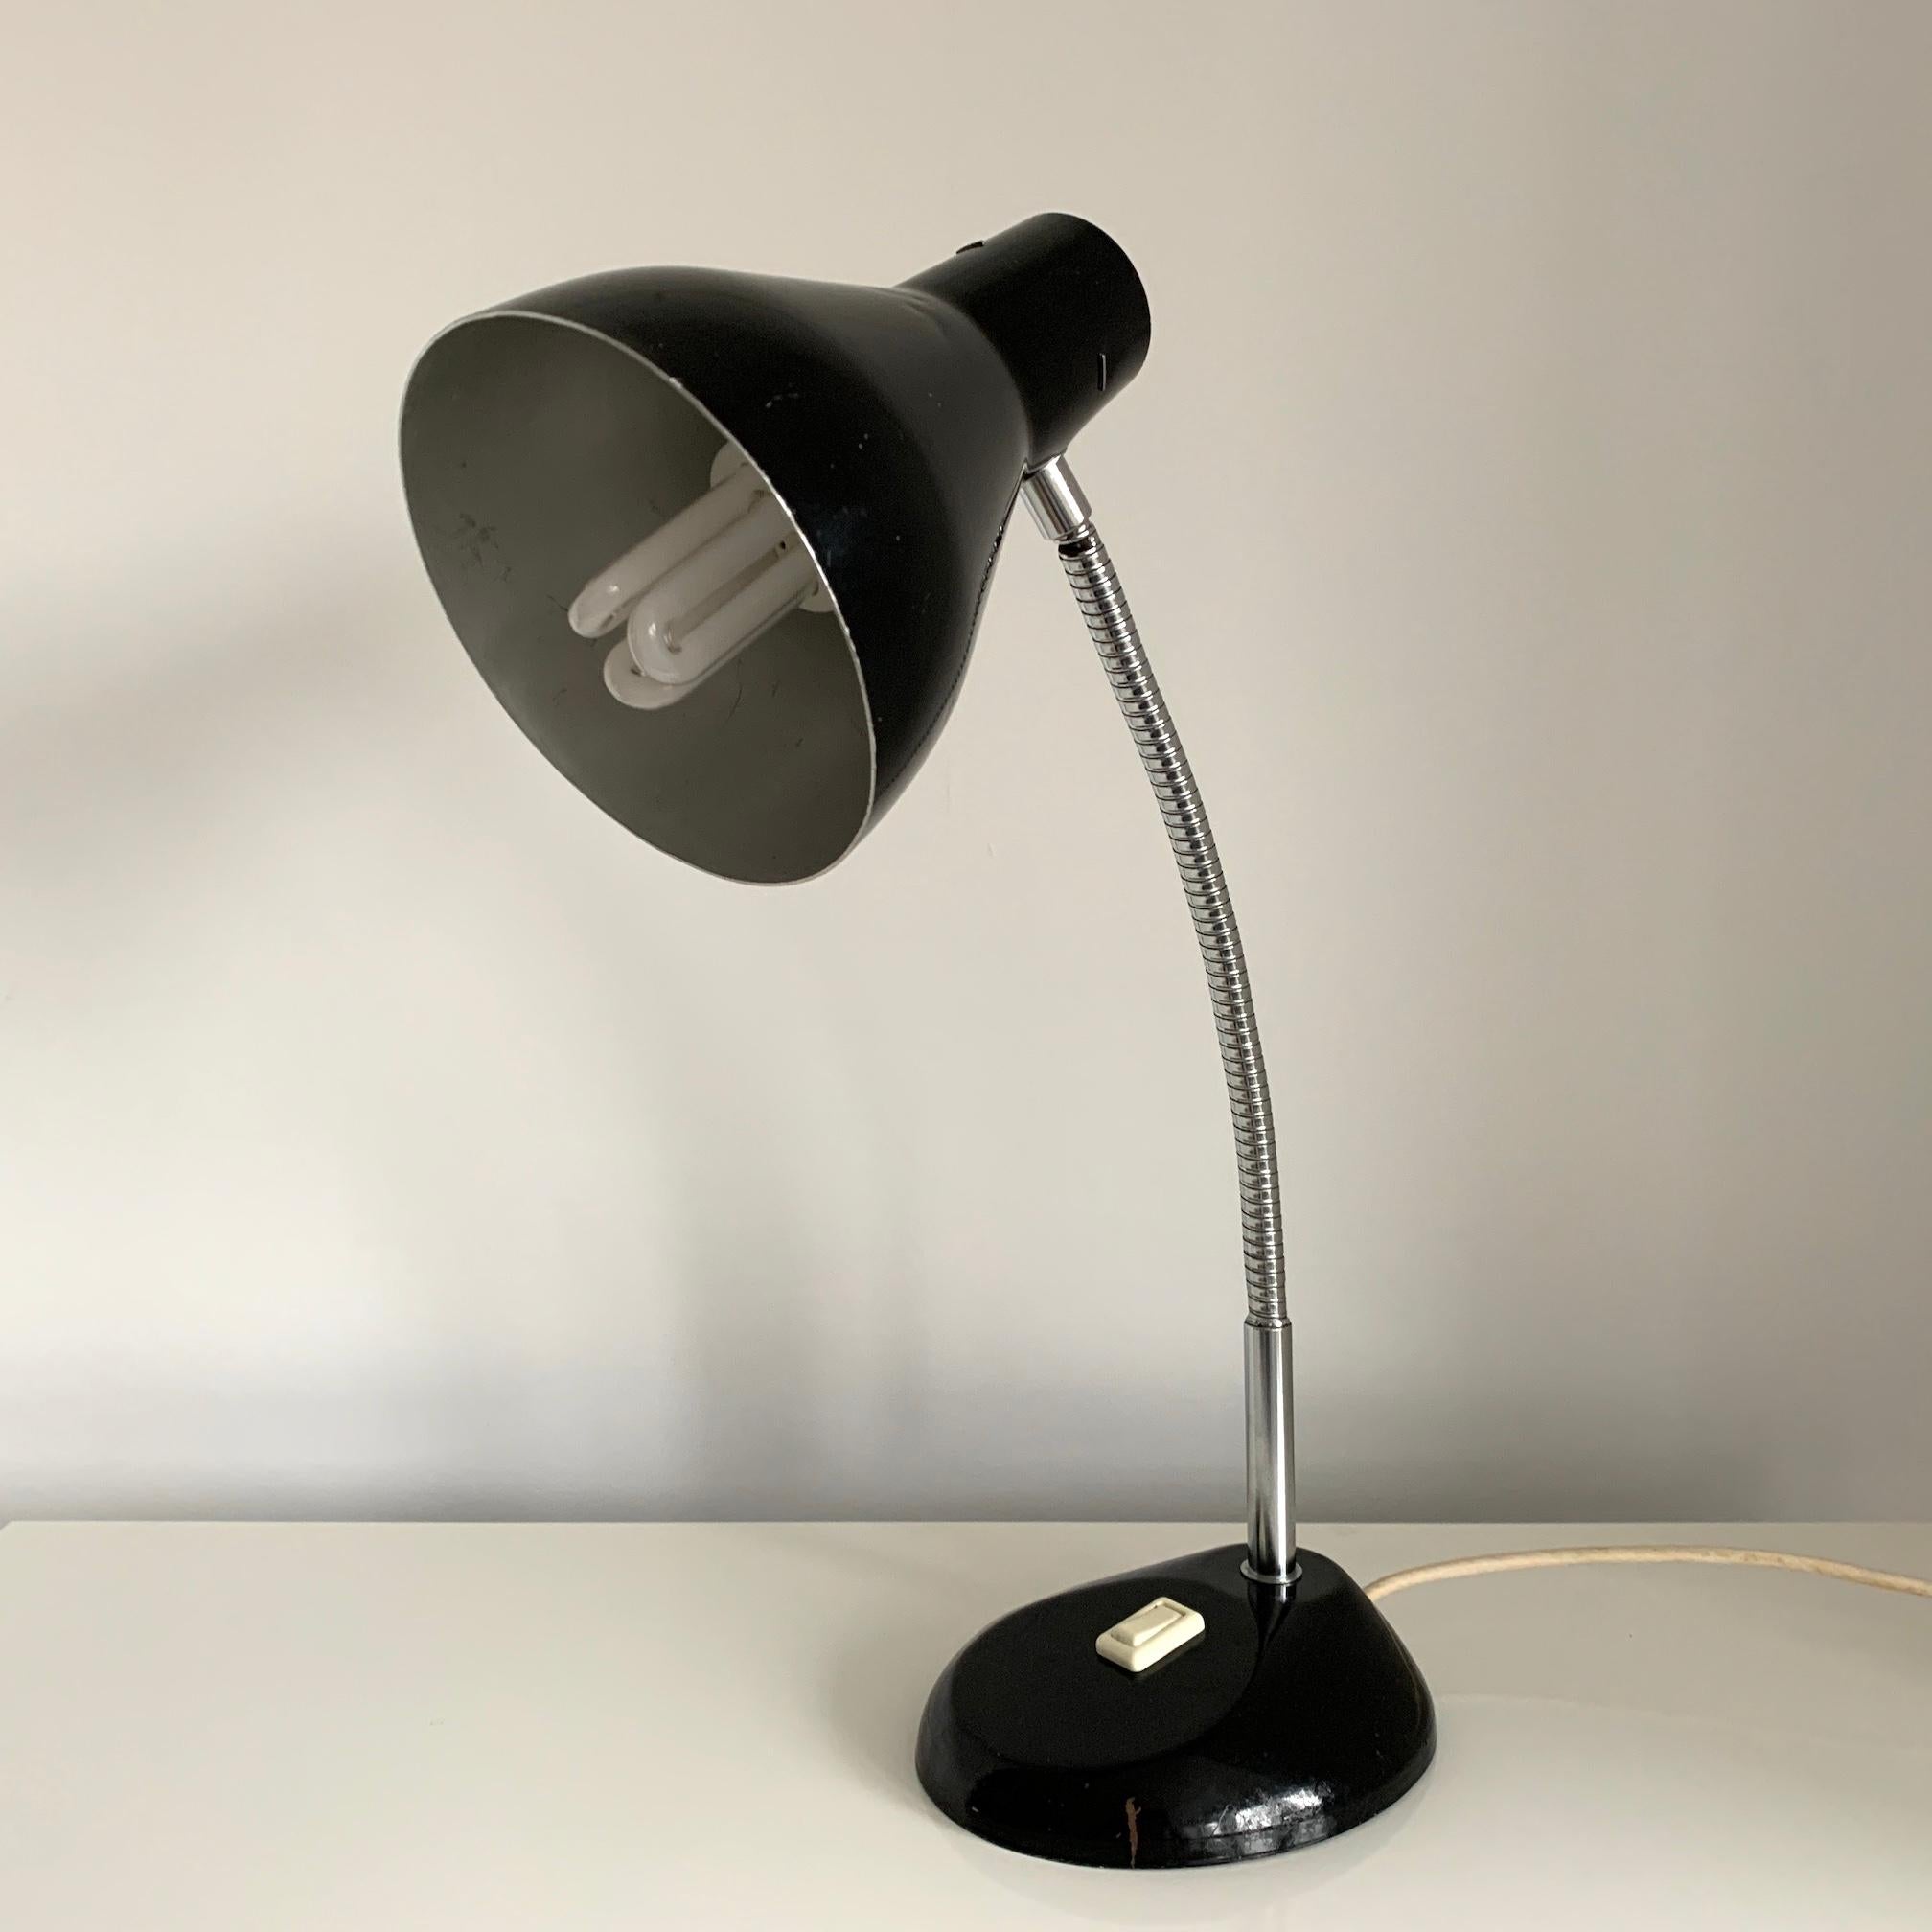 Die Herbert Terry Schreibtischlampe hat ein schlankes Design mit einem flexiblen Schwanenhals, schwarz glänzend und mit einem Schalter am Sockel. Ein zeitloser Klassiker, der sich perfekt in jede Vintage- oder zeitgenössische Einrichtung